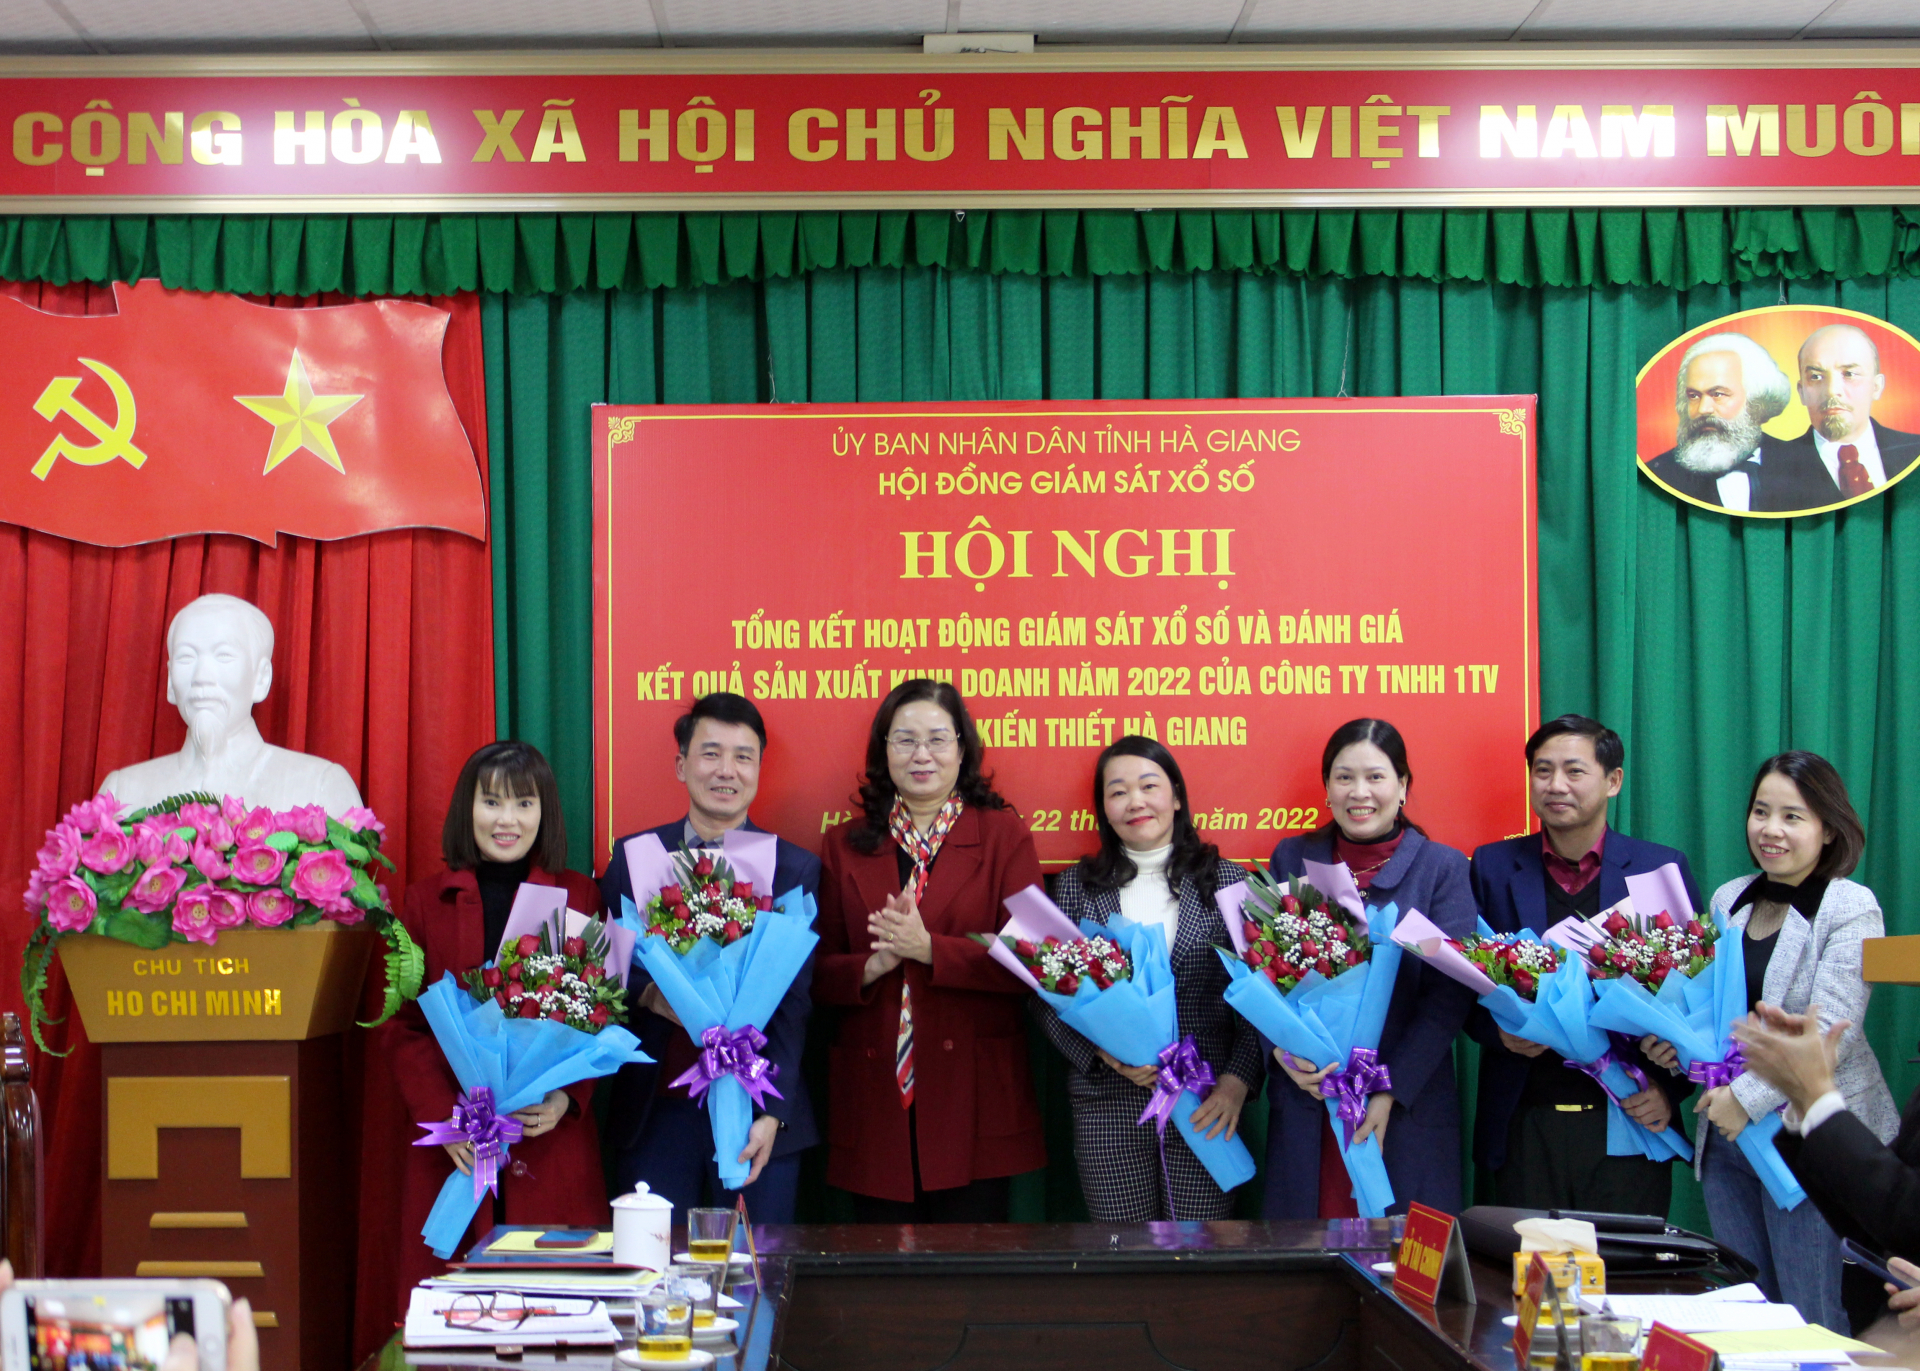 Chủ tịch Hội đồng giám sát Xổ số tỉnh, Hà Thị Minh Hạnh khen thưởng các thành viên Hội đồng có thành tích xuất sắc trong thực hiện công tác năm 2022